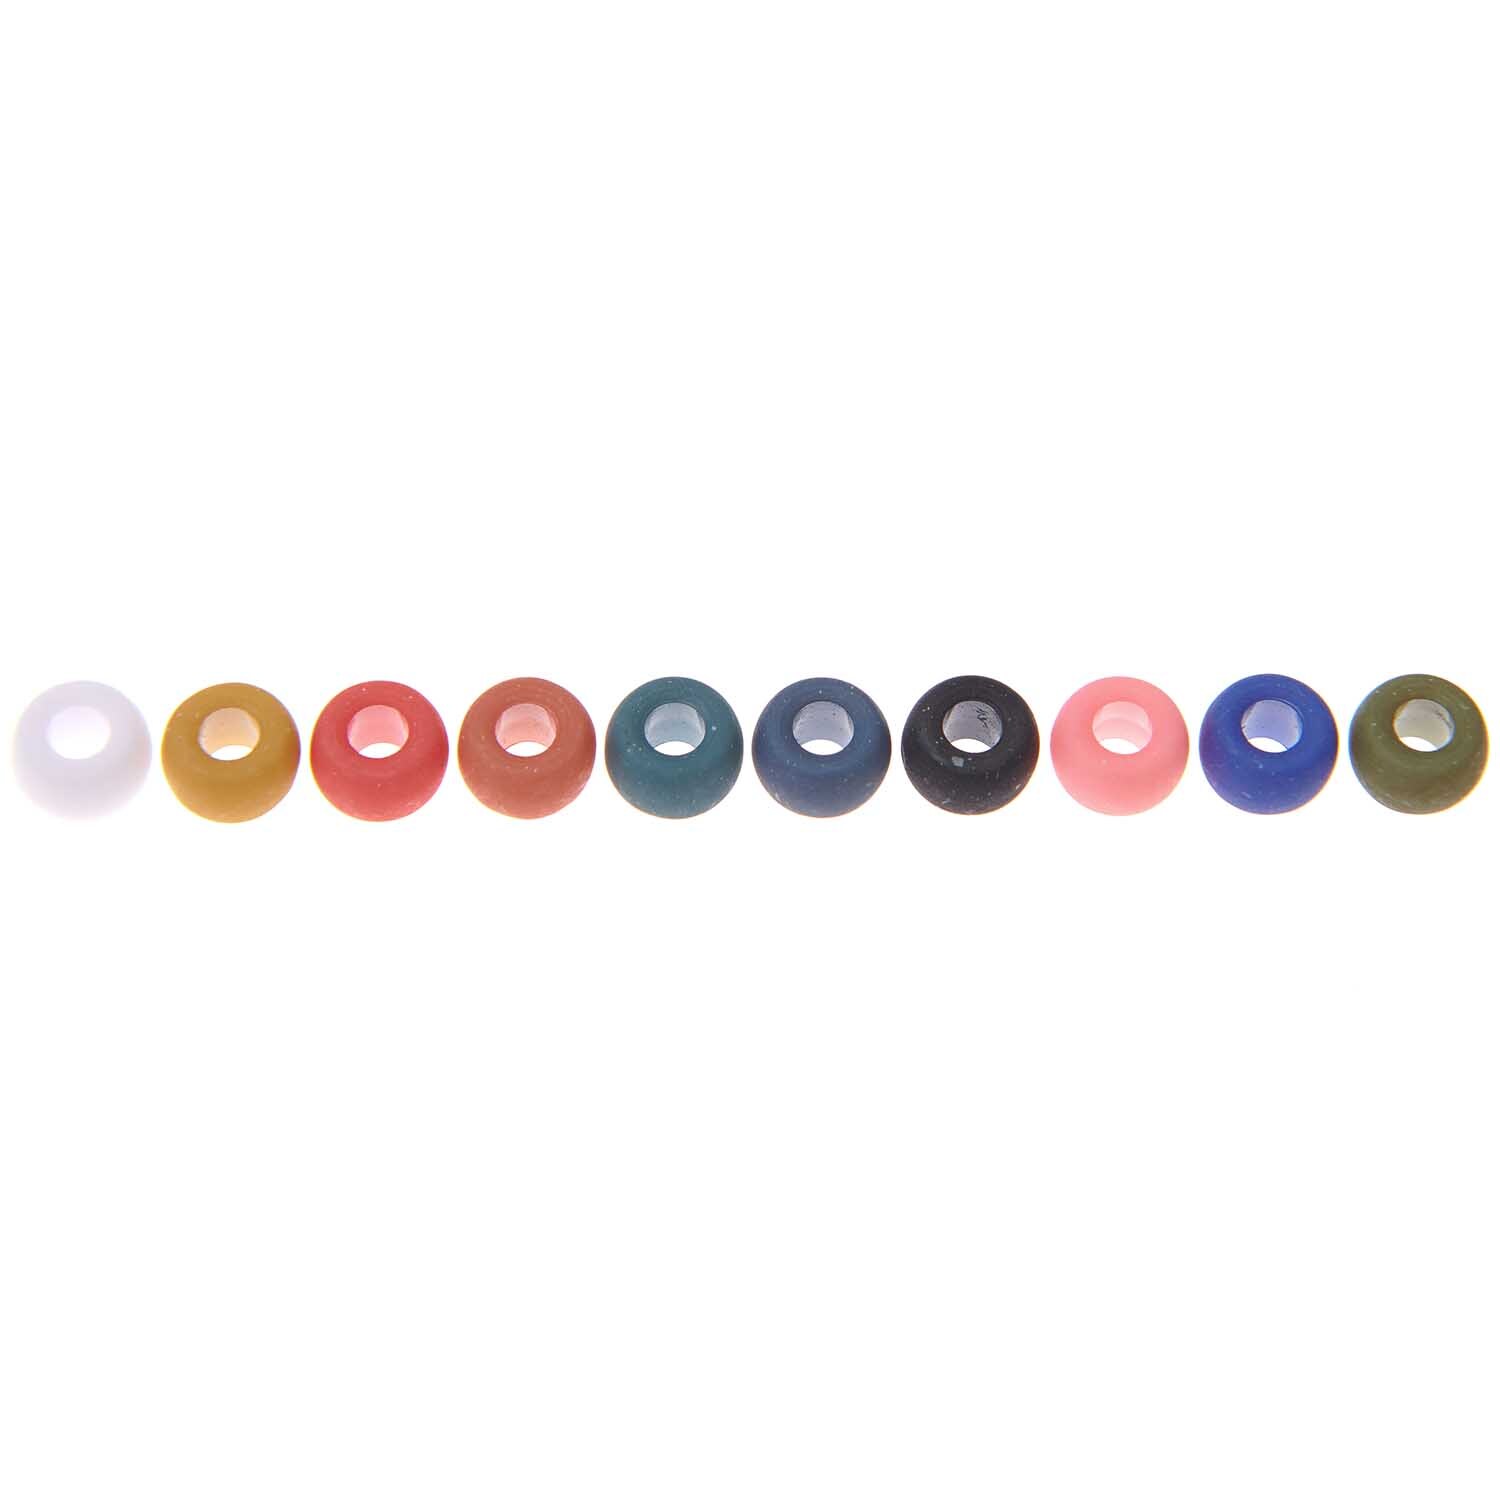 itoshii - Ponii Beads matt Erdfarben dunkel 9x6mm 400 Stück